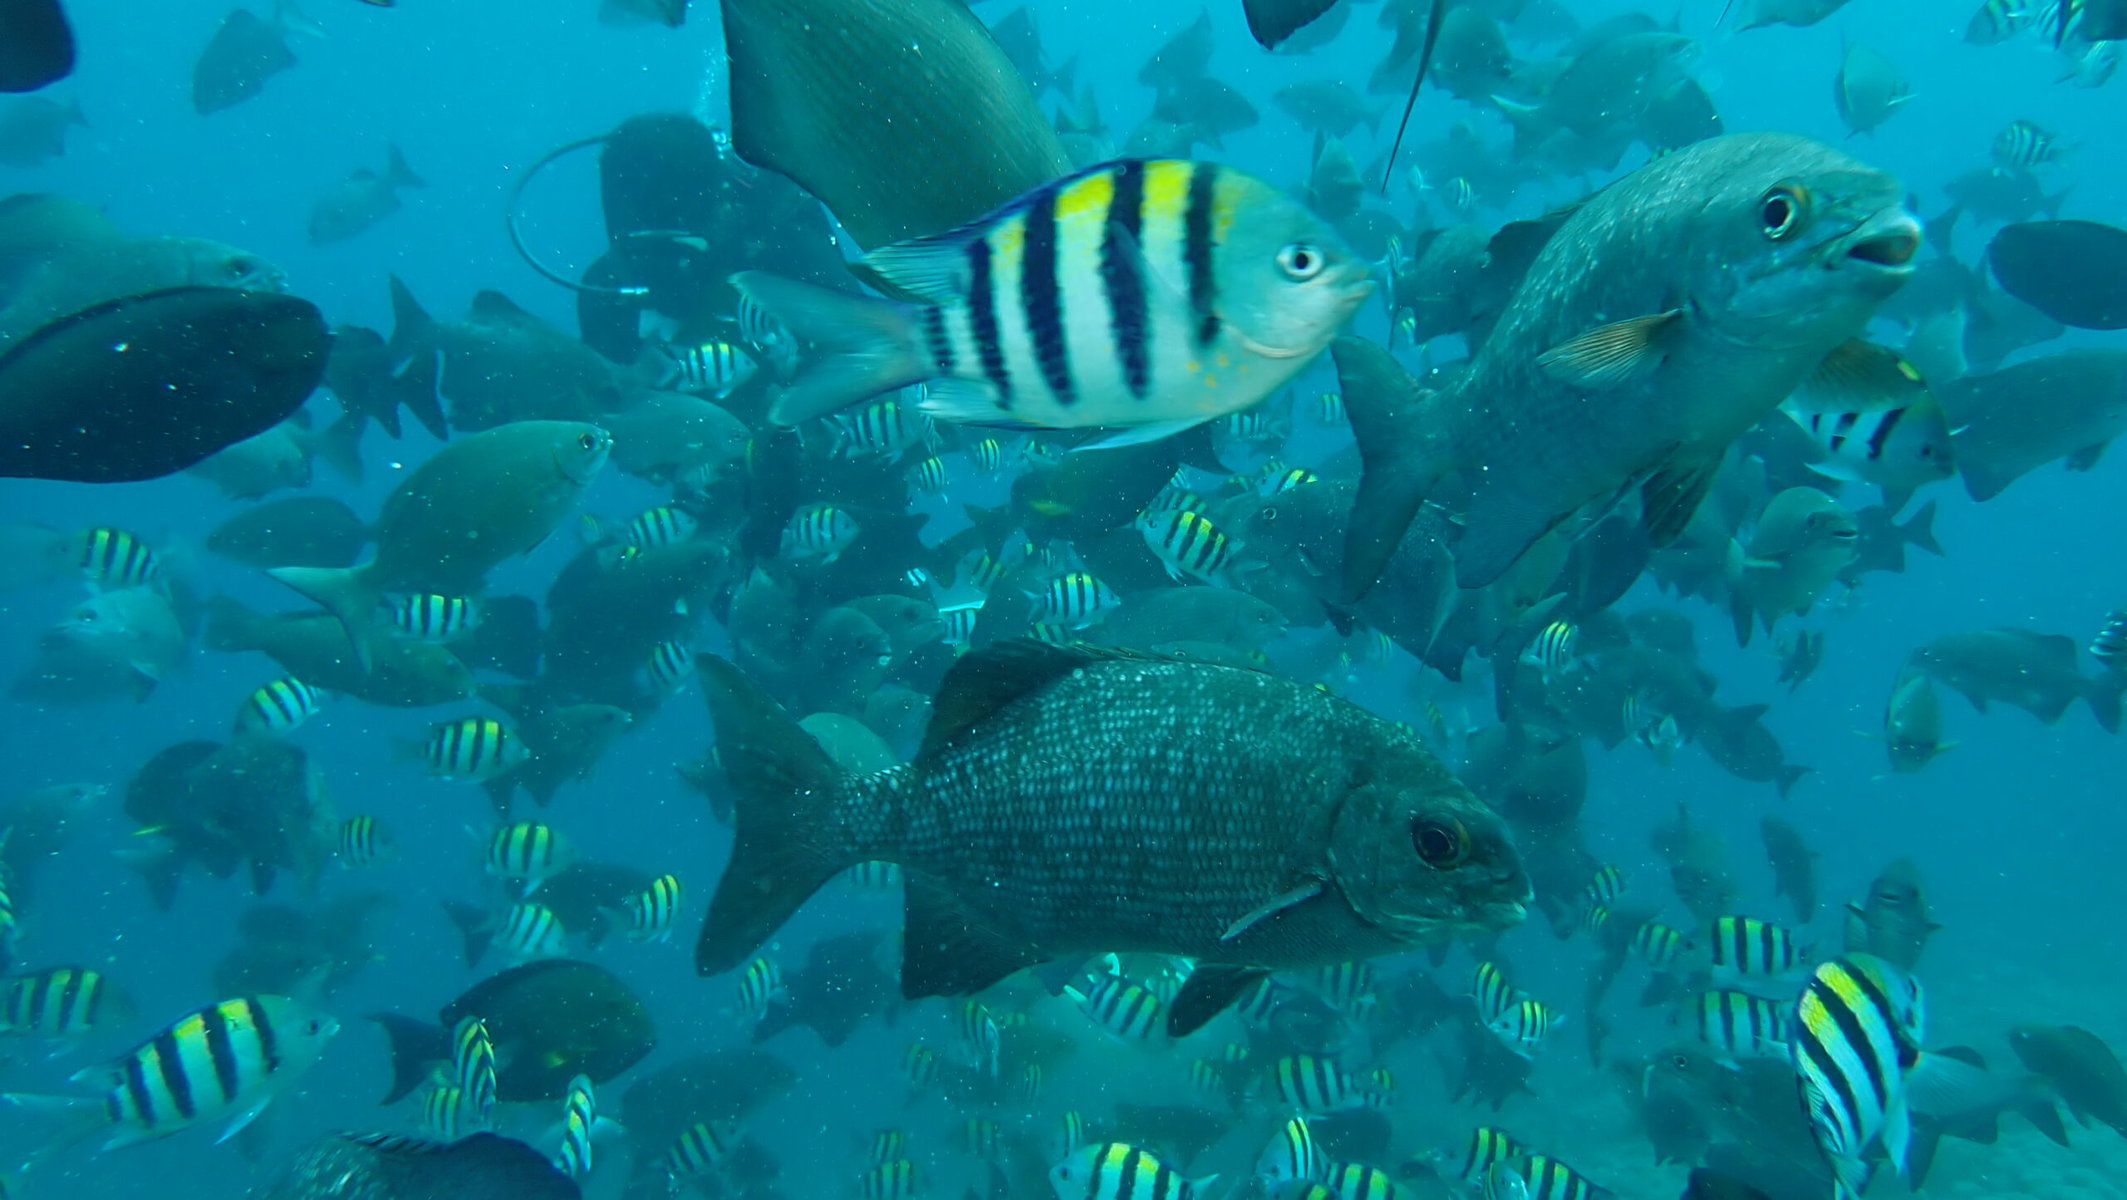 Fish swim in the waters of Indonesia's Raja Ampat.